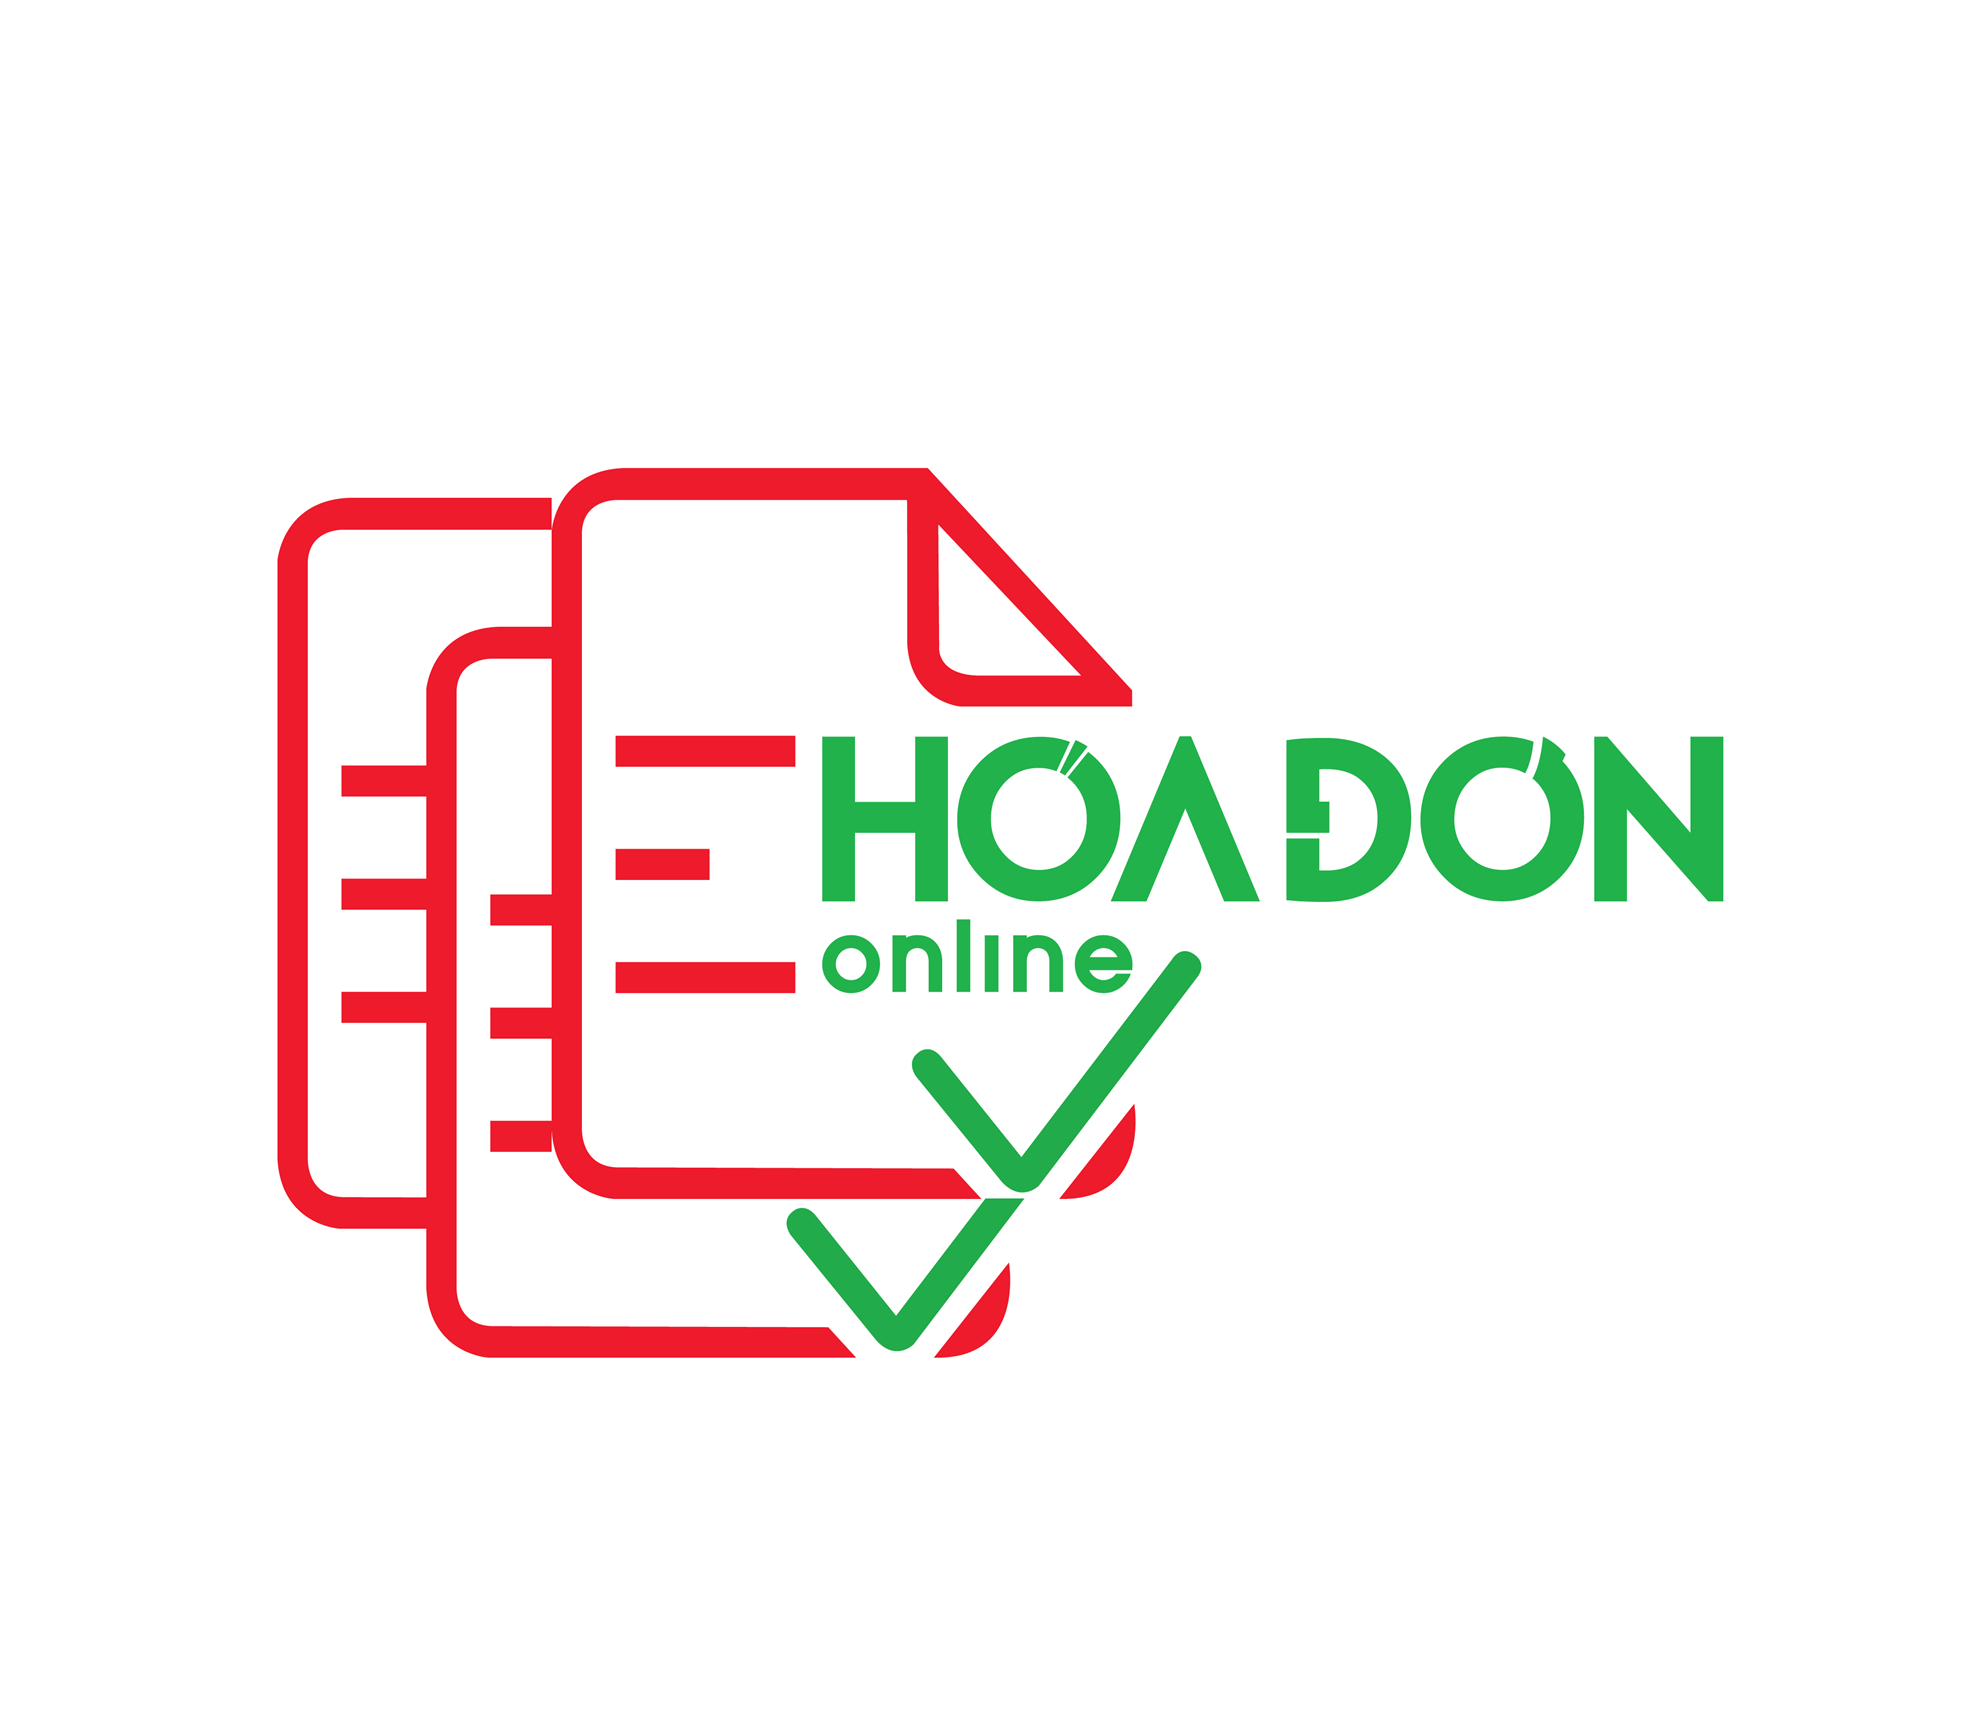 Hình ảnh cho mục tin tức eHoaDon Online - Góp phần phát triển nước nhà bằng việc góp phần thúc đẩy chuyển đổi số 